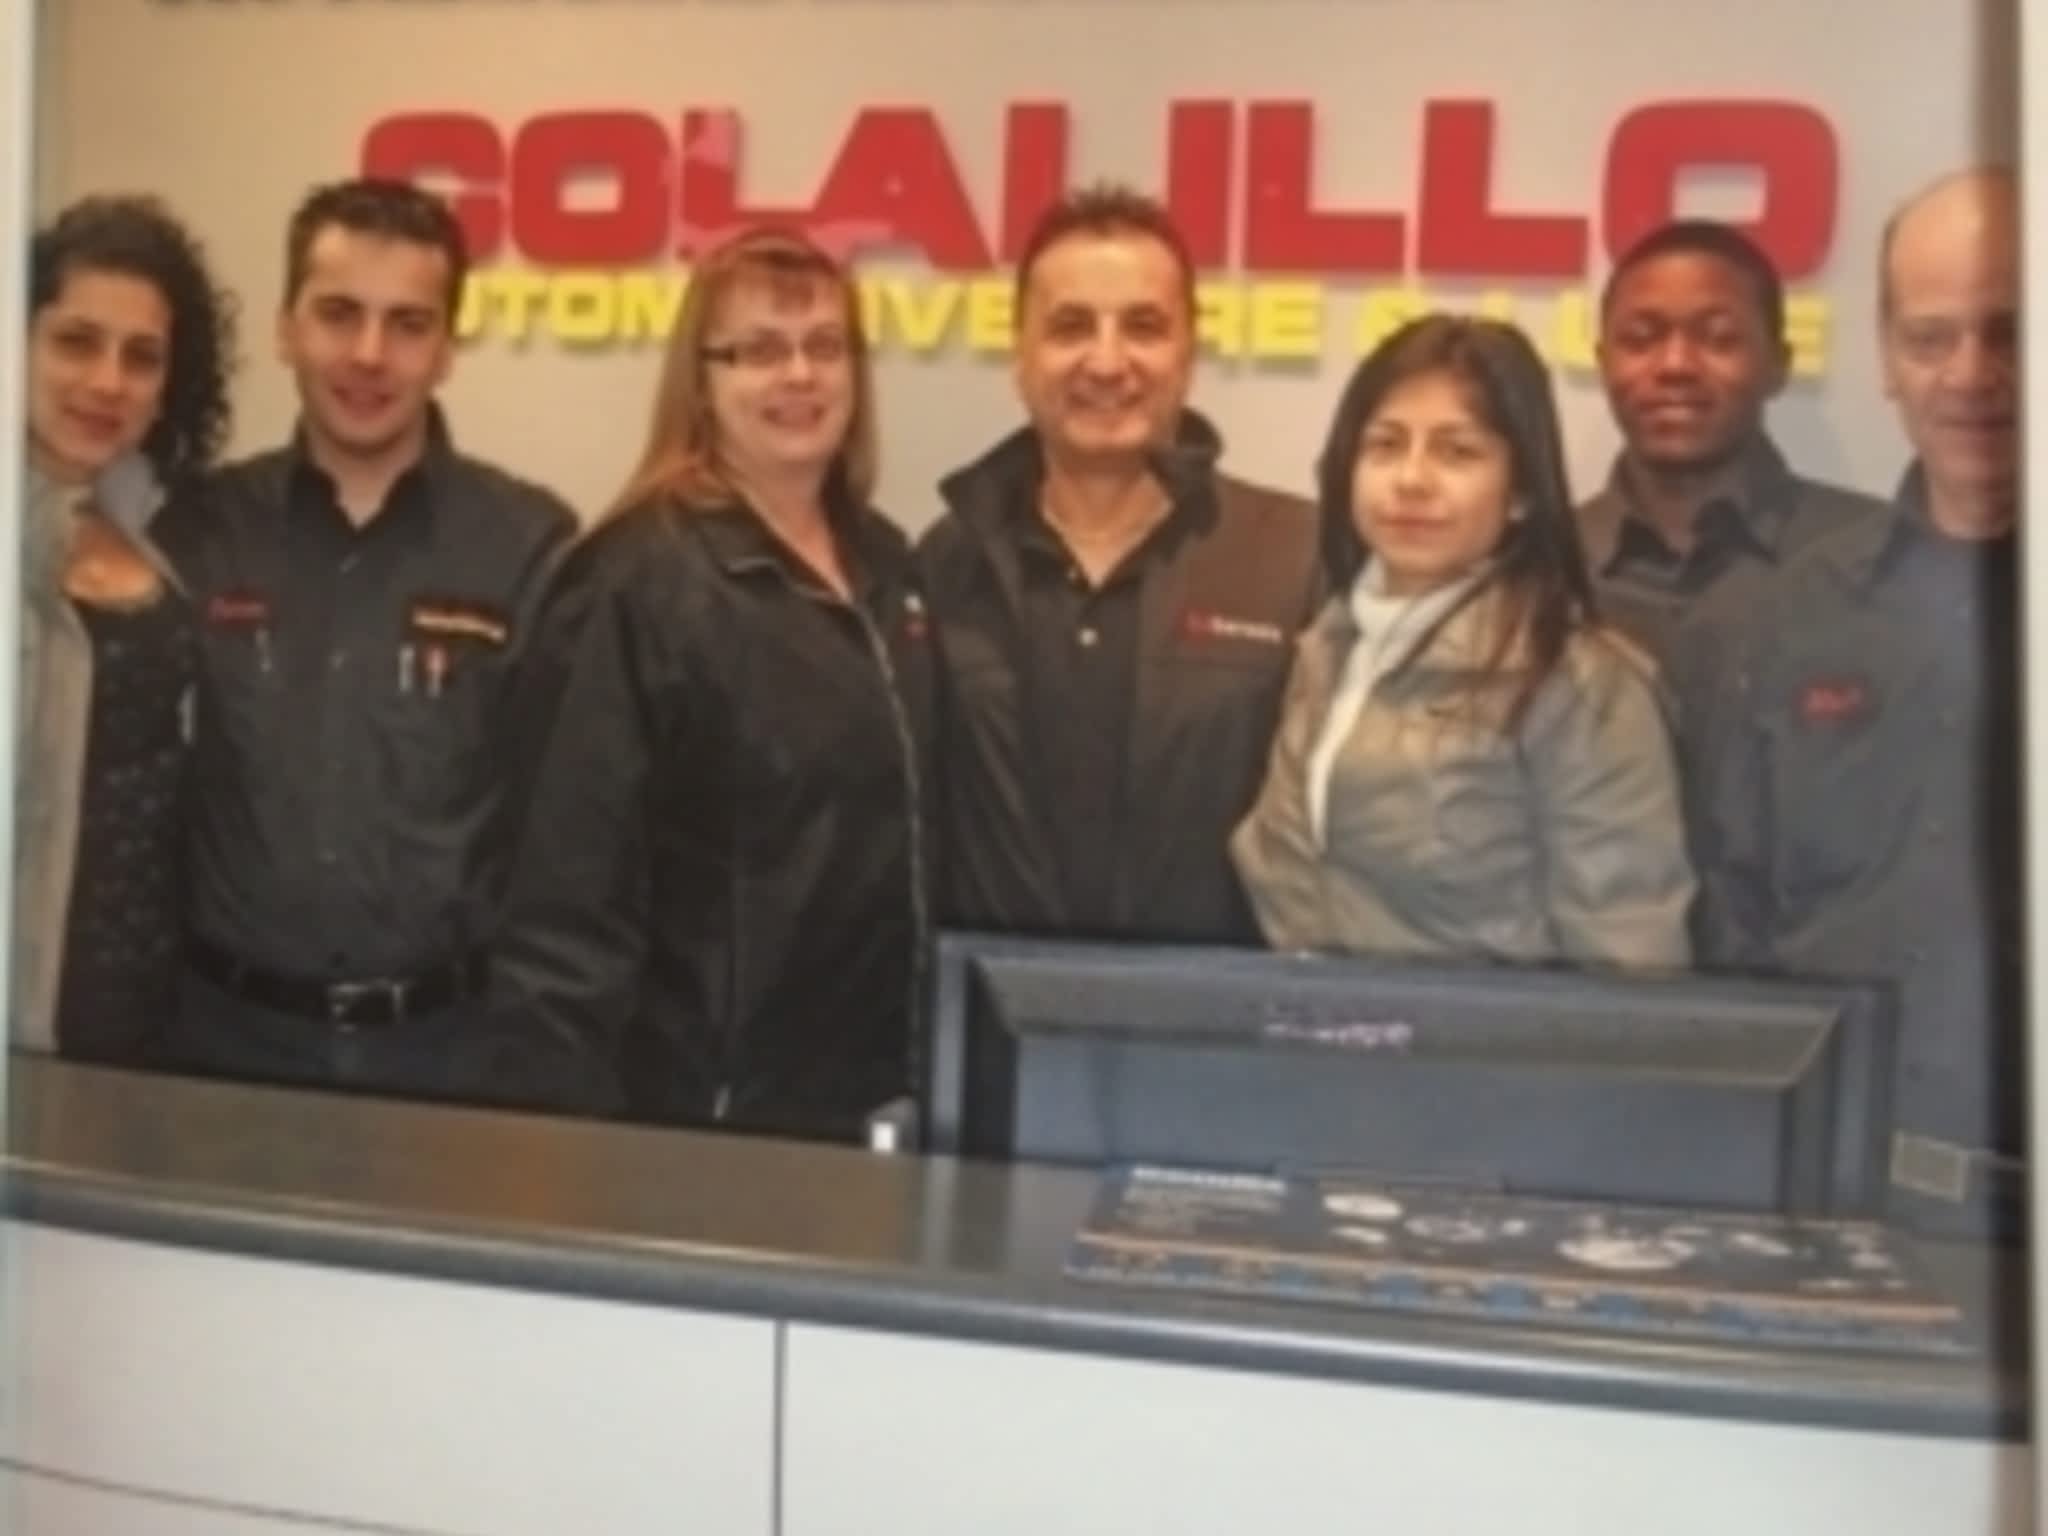 photo Colalillo Automotive Services Ltd